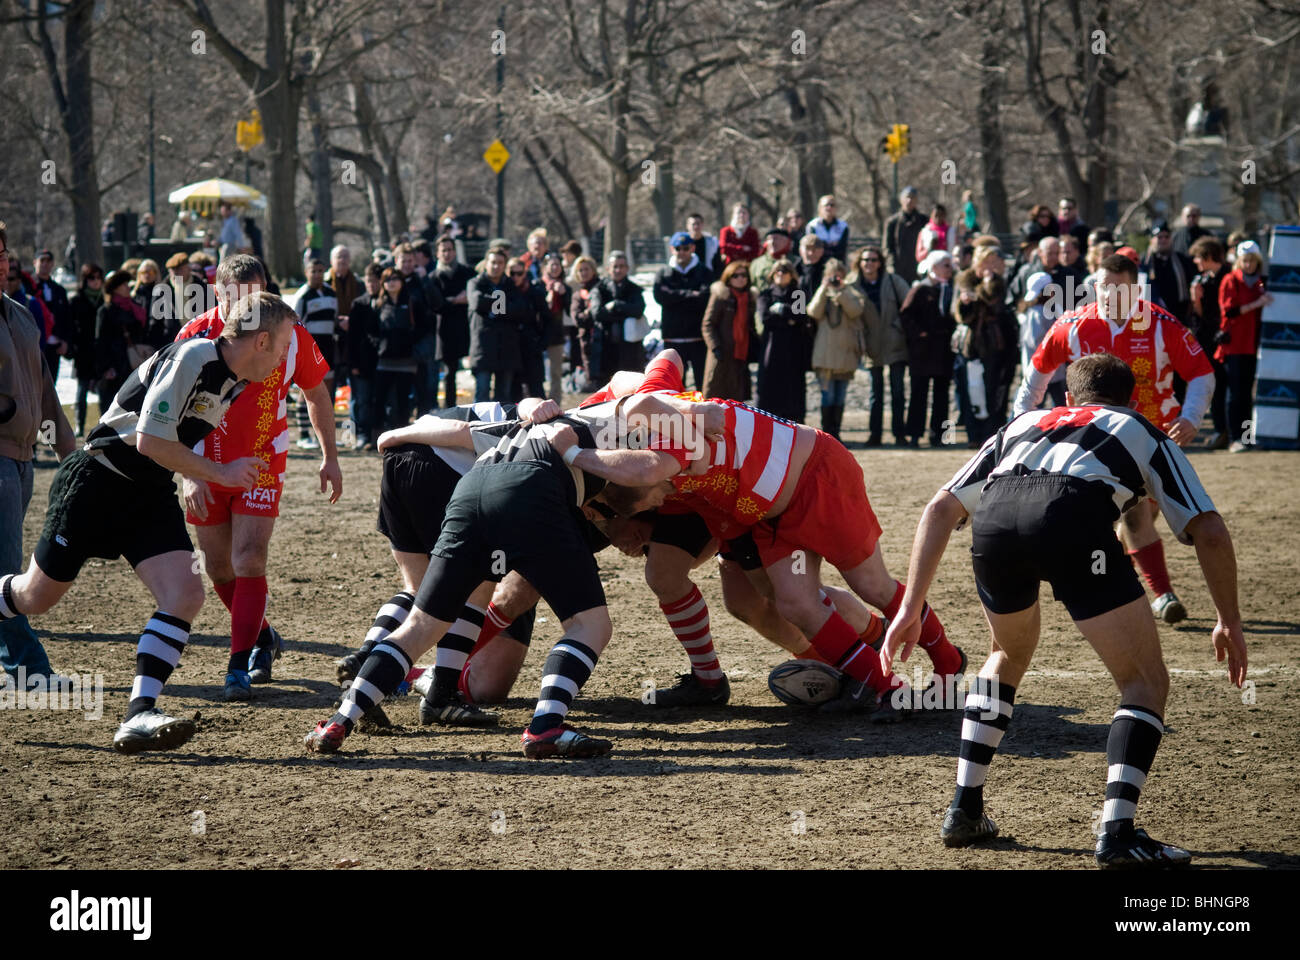 Ehemaliger Rugby-Spieler aus der Gascogne Frankreich spielen gegen französische Köche aus US-Küchen im Central Park in New York Stockfoto